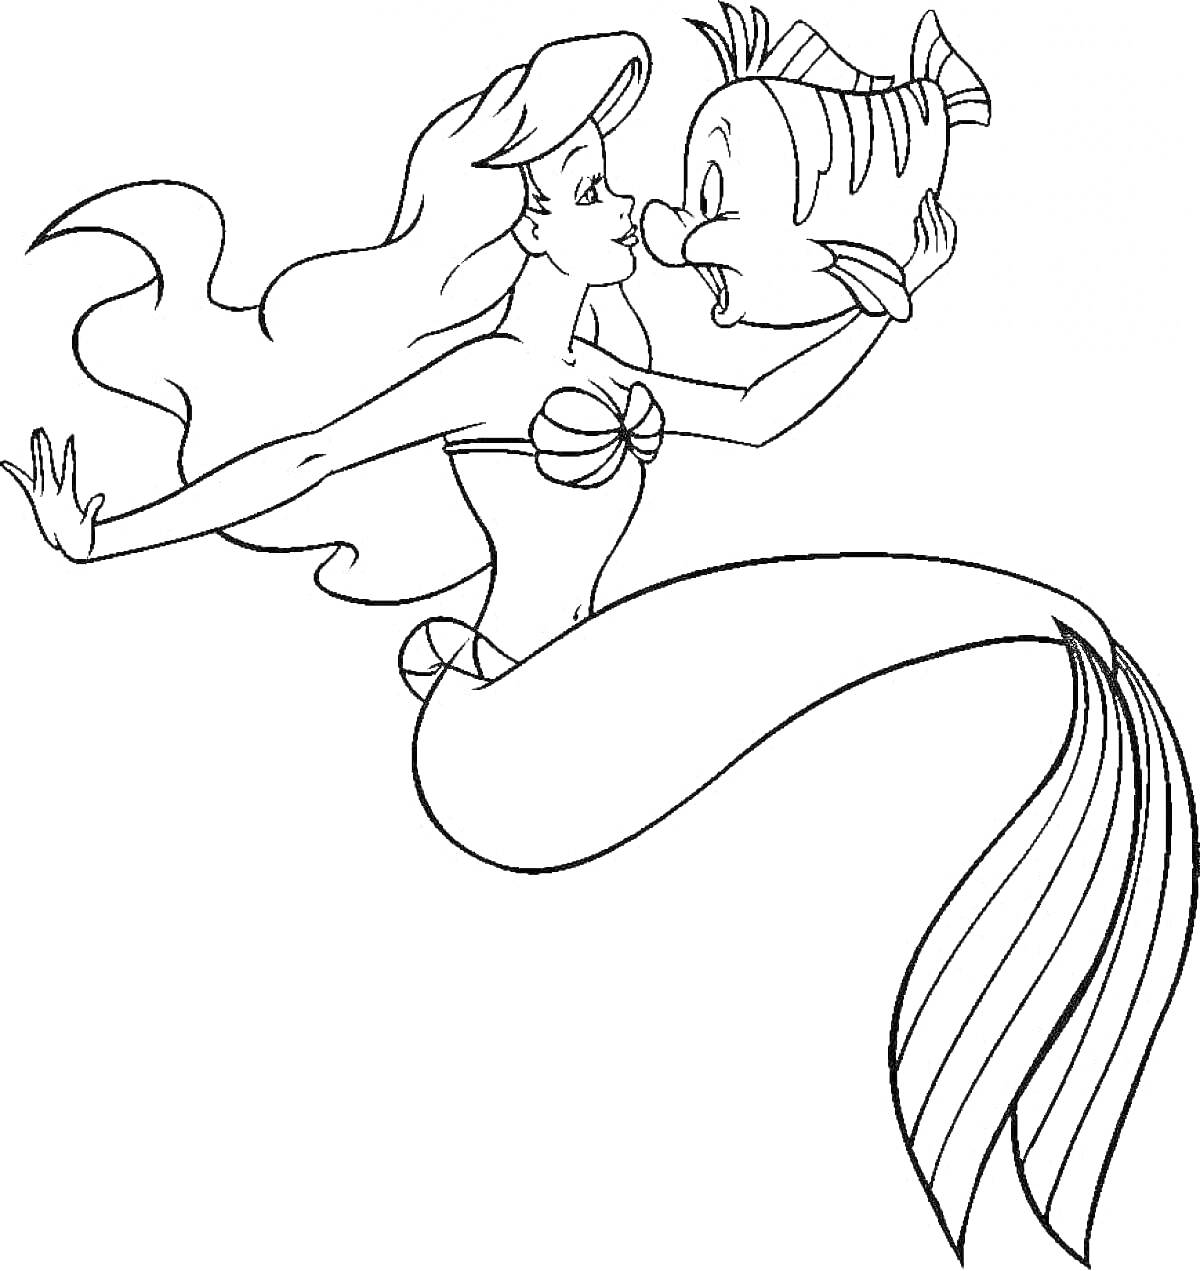 Раскраска Русалка с длинными волосами и ракушками вместо лифа обнимает рыбу